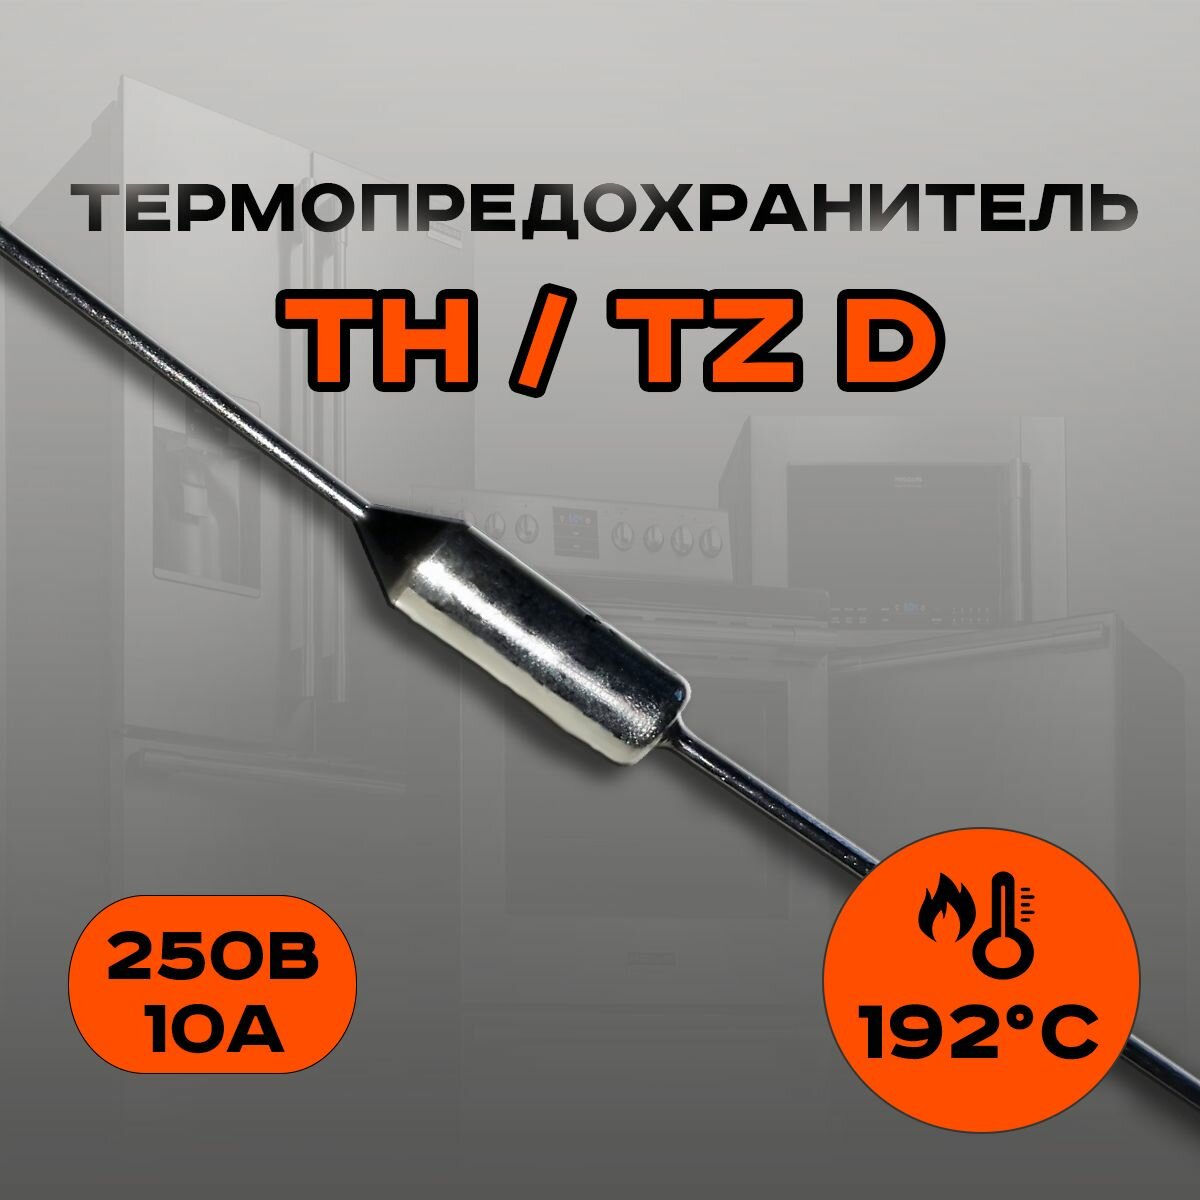 Термопредохранитель ТН 192 С 10А (TZ D)